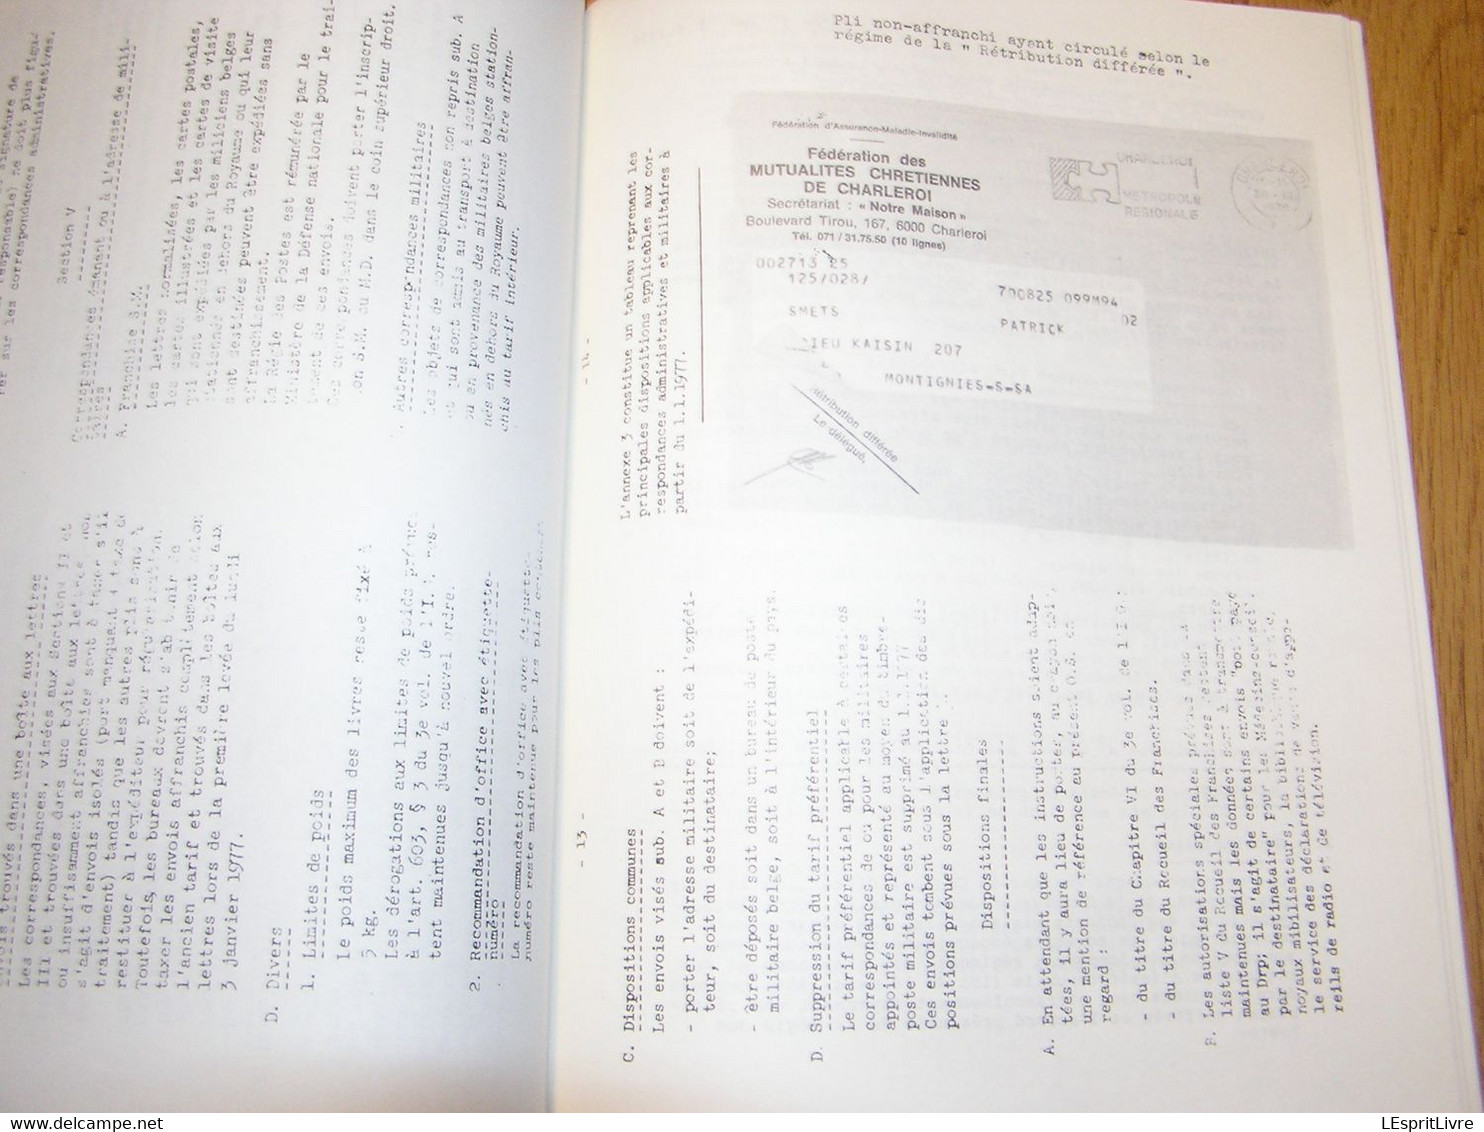 LA CORRESPONDANCE DES MILITAIRES BELGES Afrique 1979 Marcophilie Philatélie Cachets Aérophilatélie Aéropostale C-130 - Altri Libri